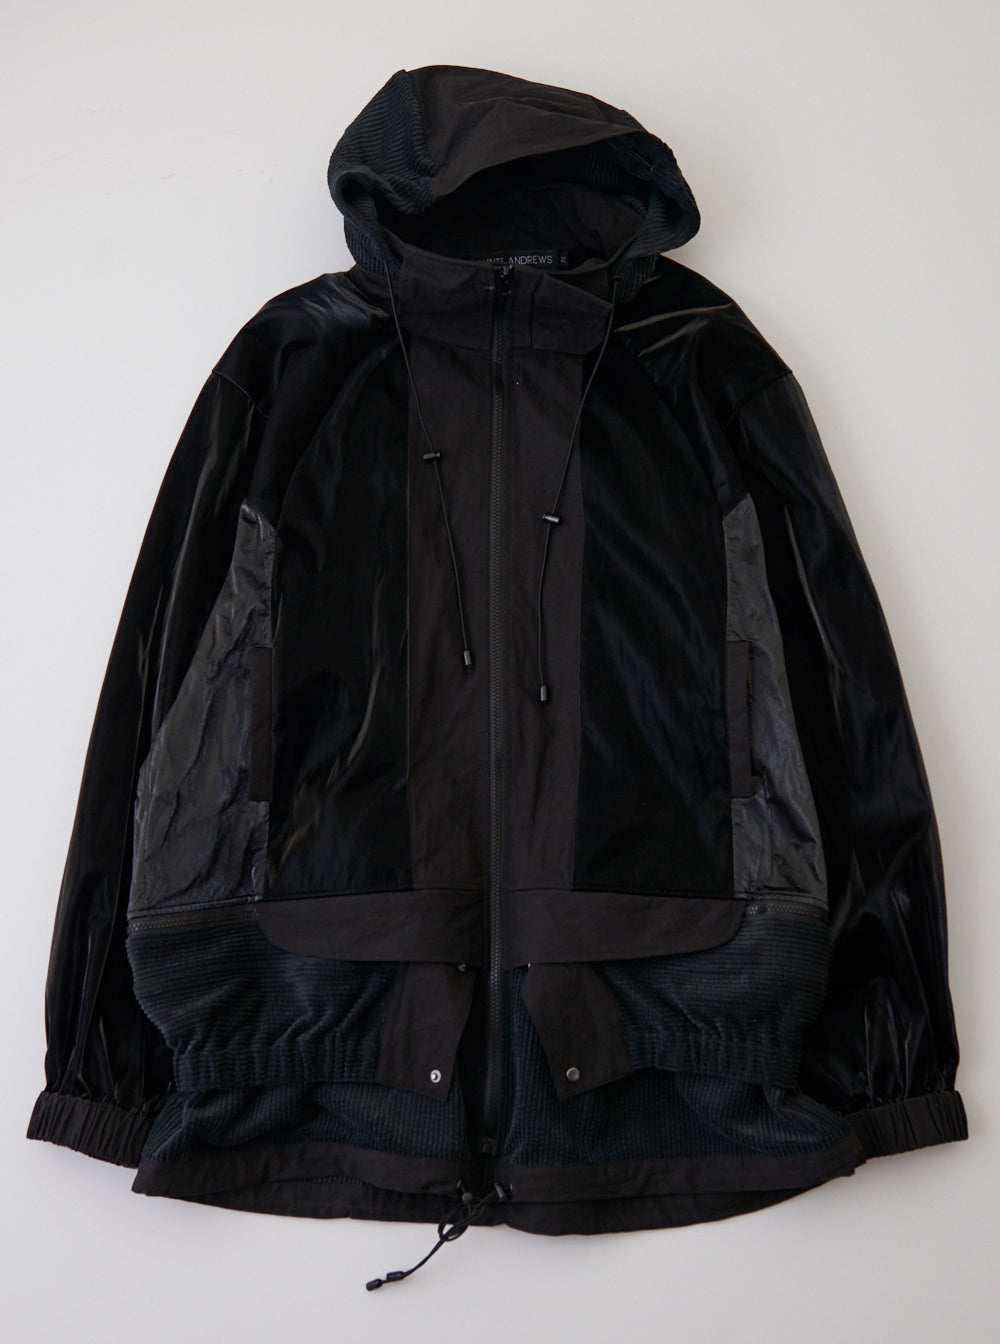 Vinti Andrews Sports Jacket Black Multi